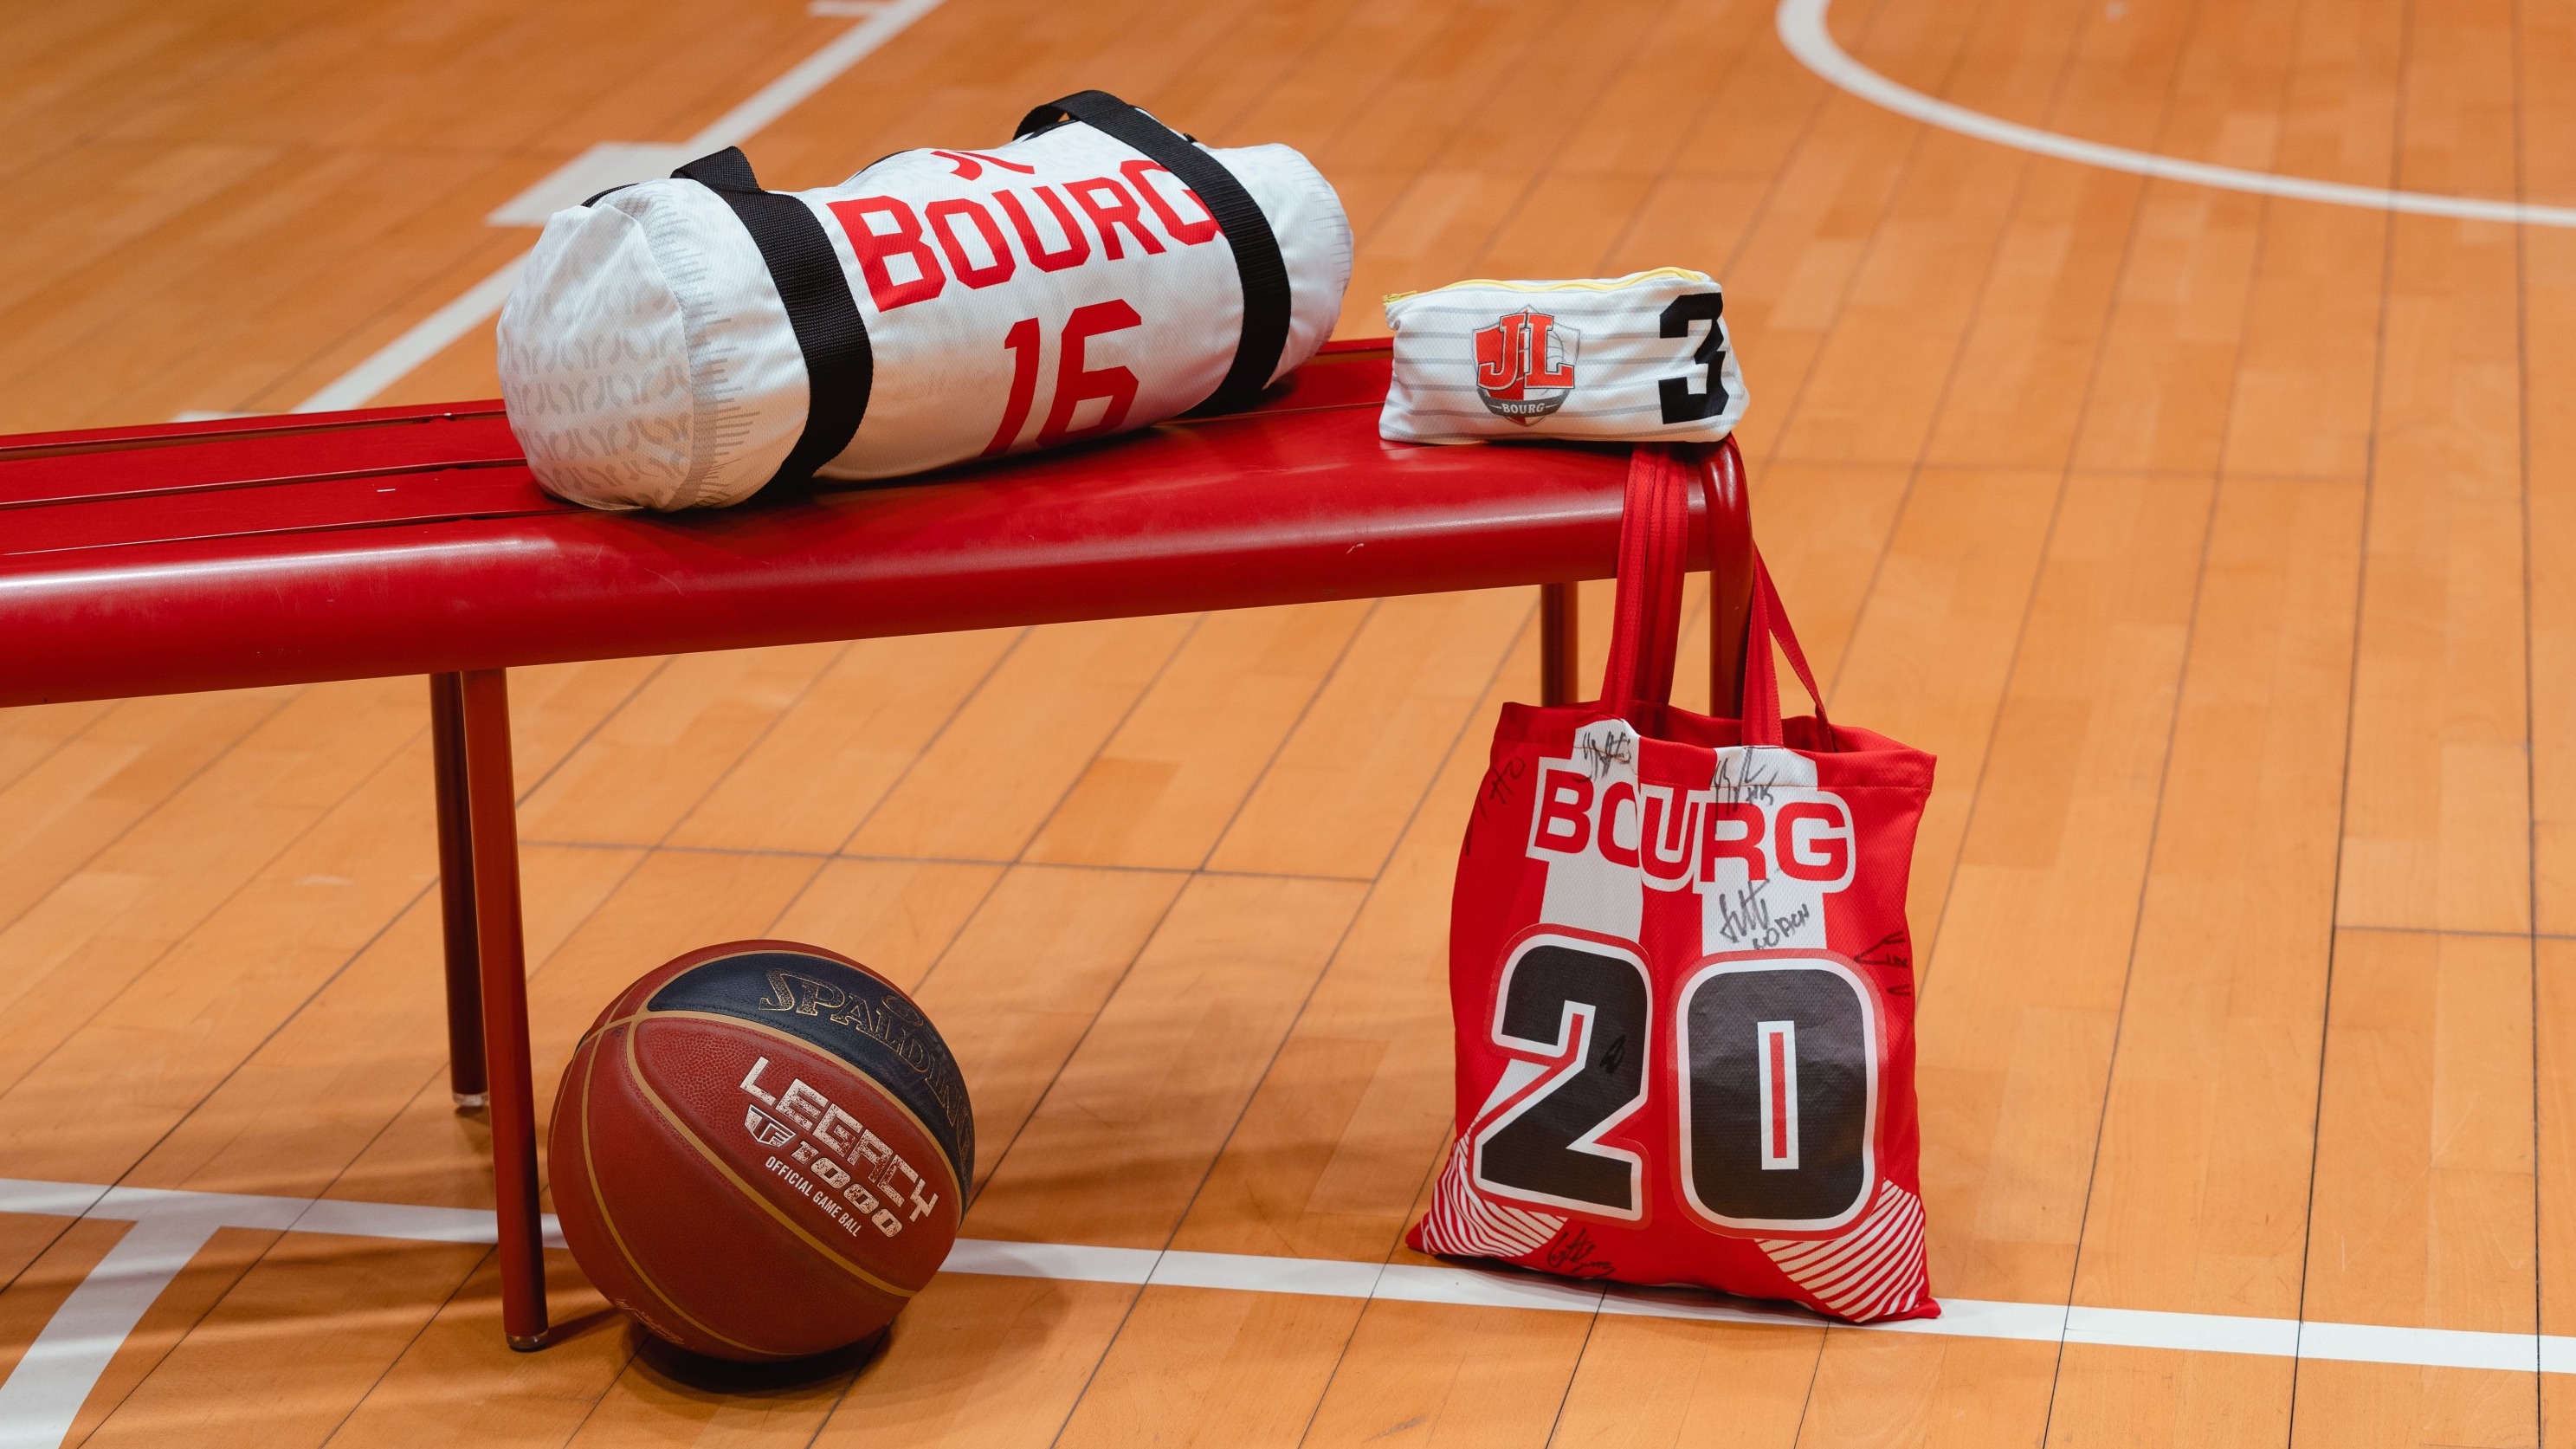 Le club de basket de Bourg-en-Bresse recycle ses maillots pour leur offrir une seconde vie